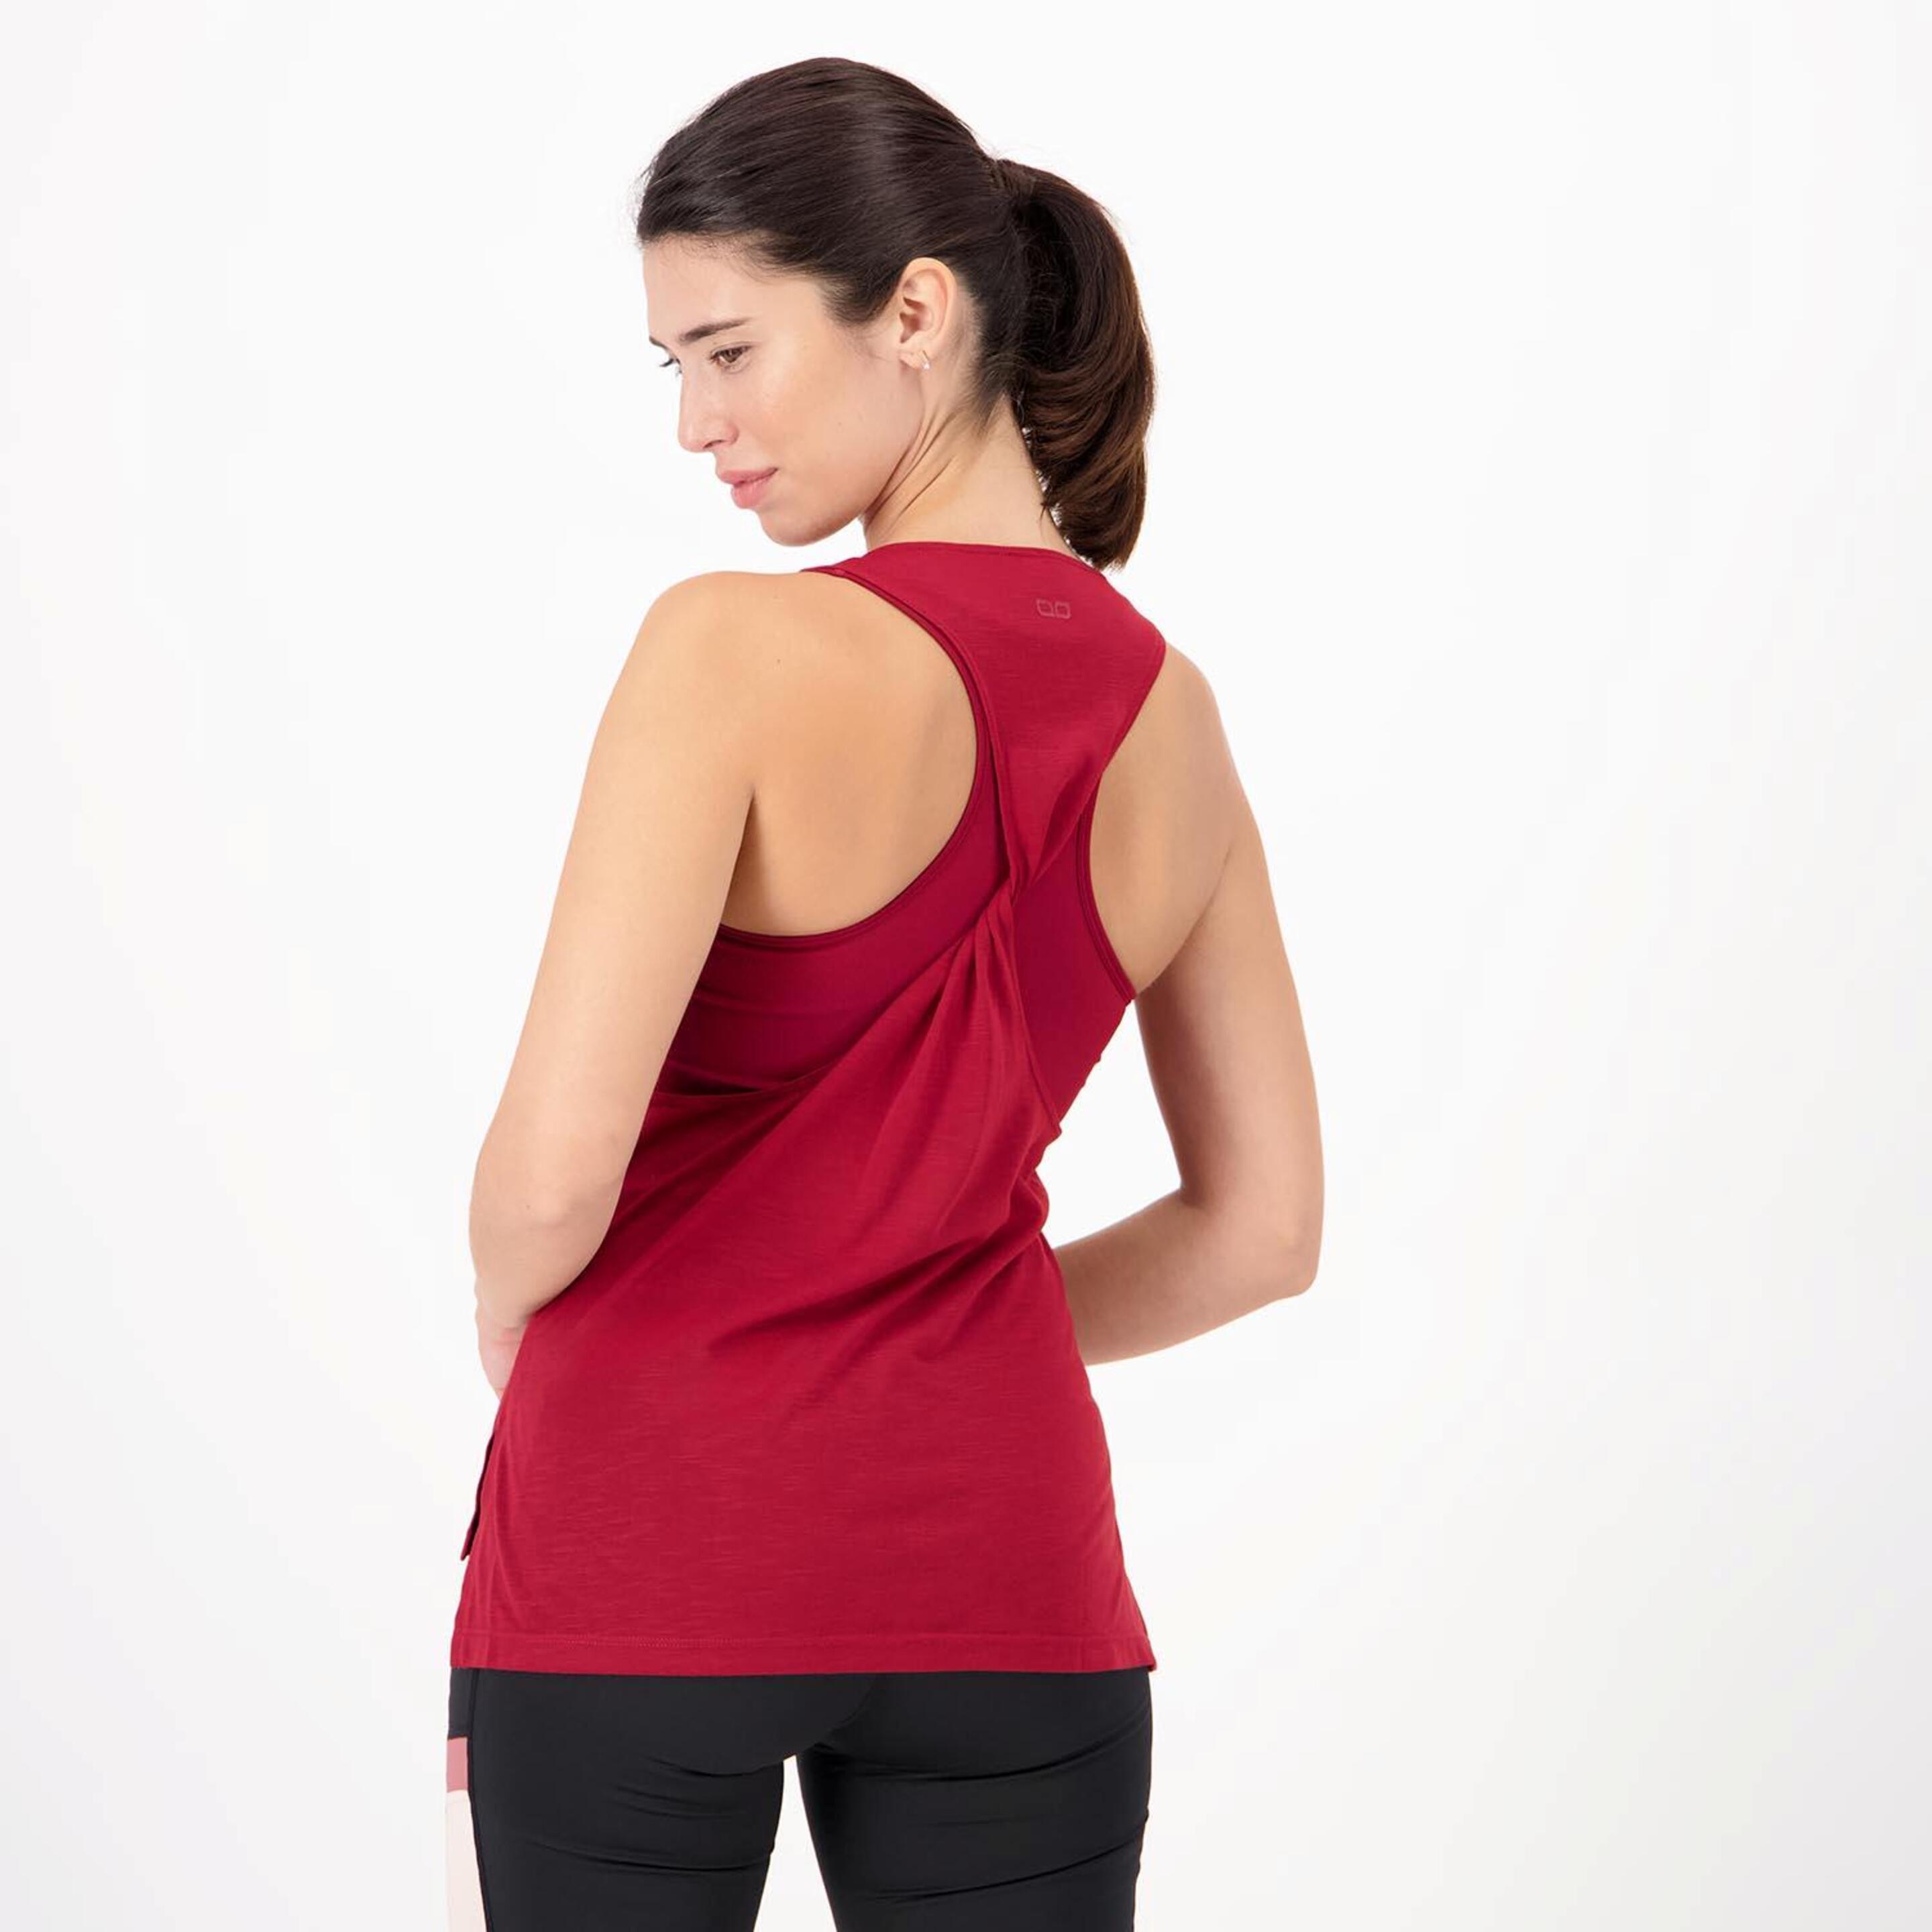 Doone Supportive 2 - Rojo - Camiseta Fitness Mujer  | Sprinter